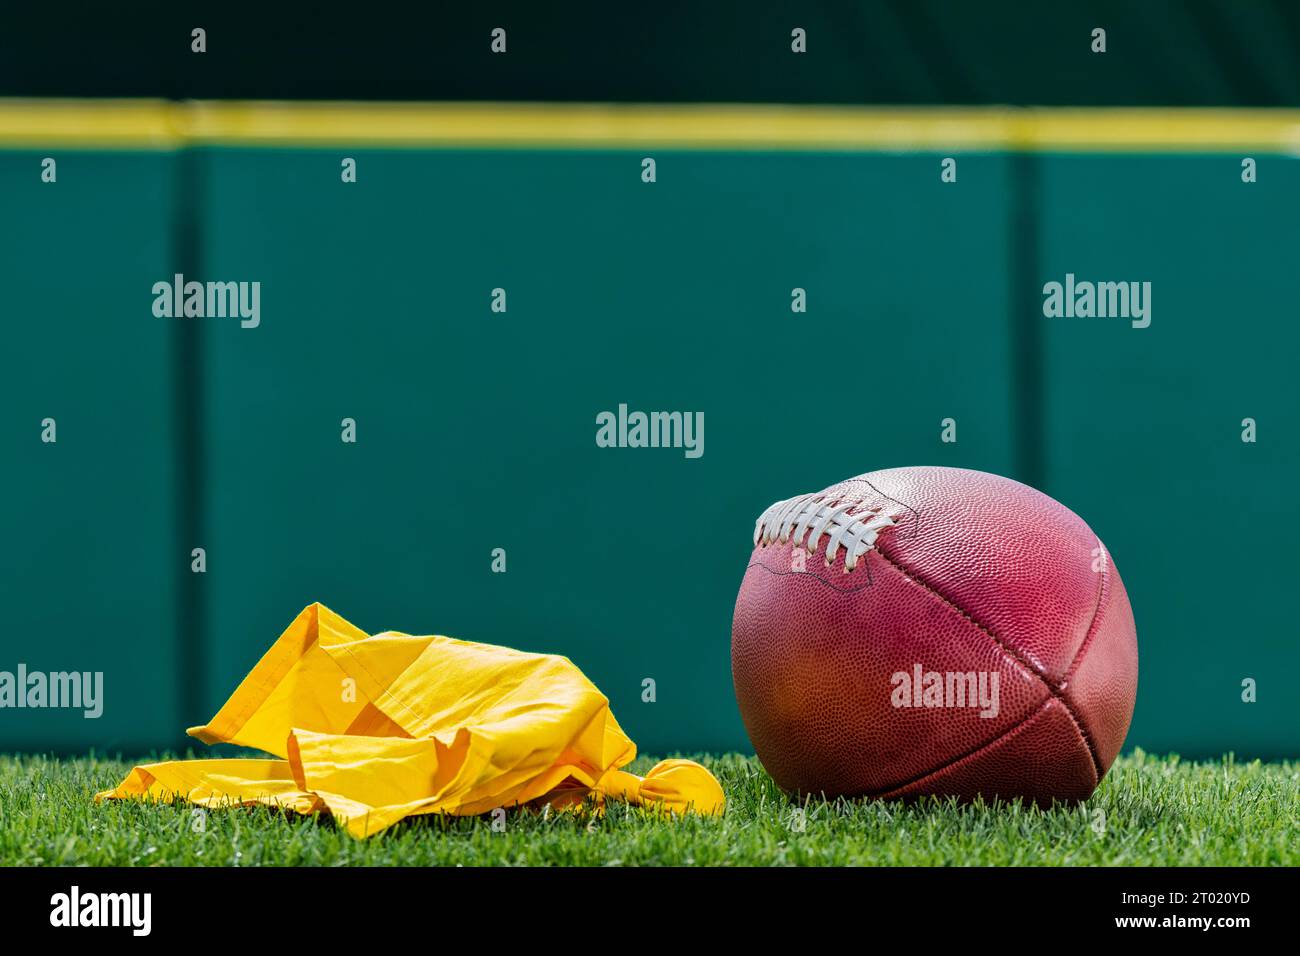 Una vista dall'angolo basso di una bandiera di rigore gialla lanciata da un arbitro accanto a un football americano professionista con parete imbottita verde sullo sfondo. Foto Stock